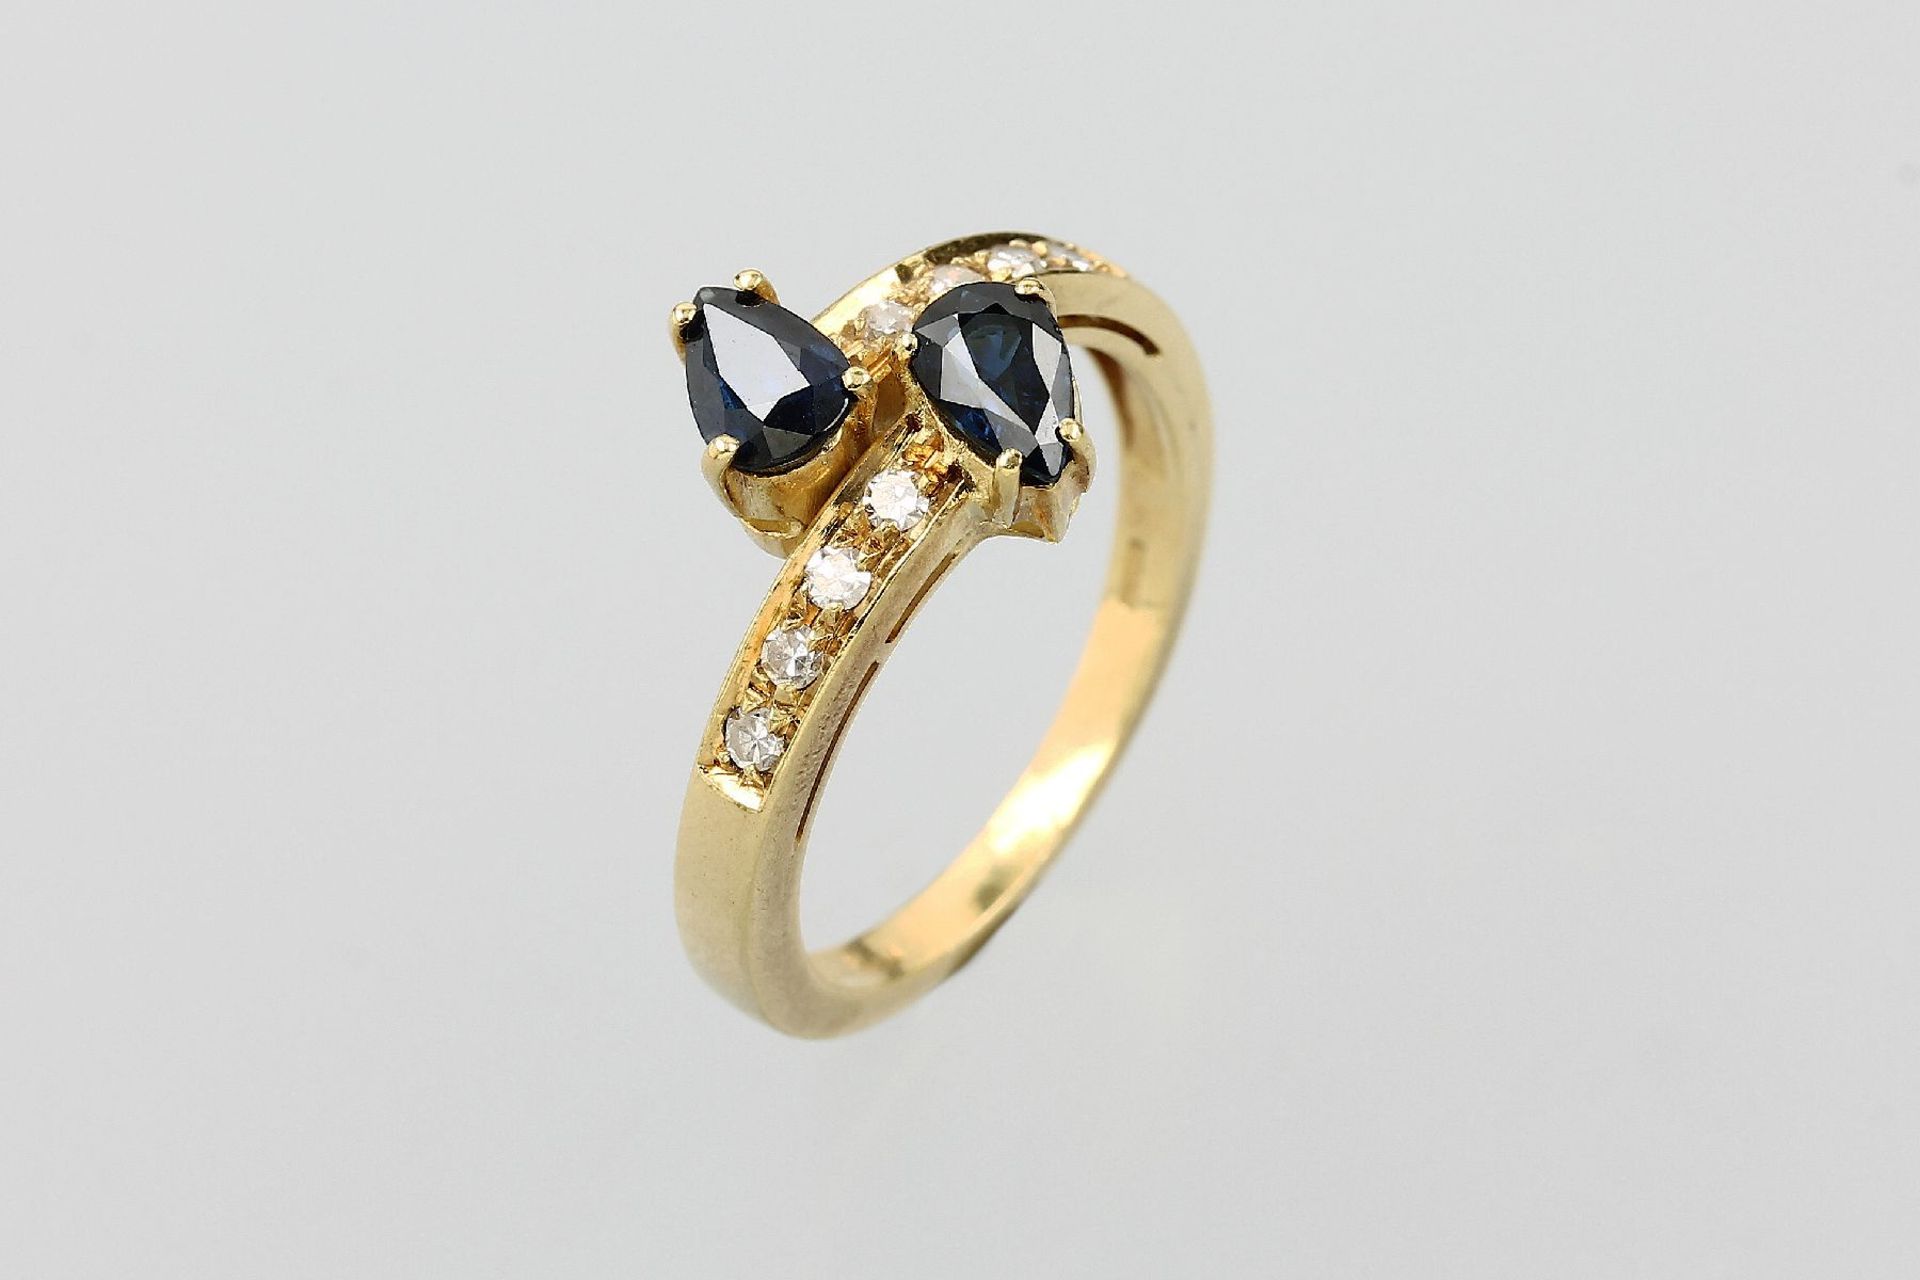 18 kt Gold Ring mit Saphiren und Diamanten, GG 750/000, 2 Saphir-Tropfen zus. ca. 0.25 ct, 8 8/8-